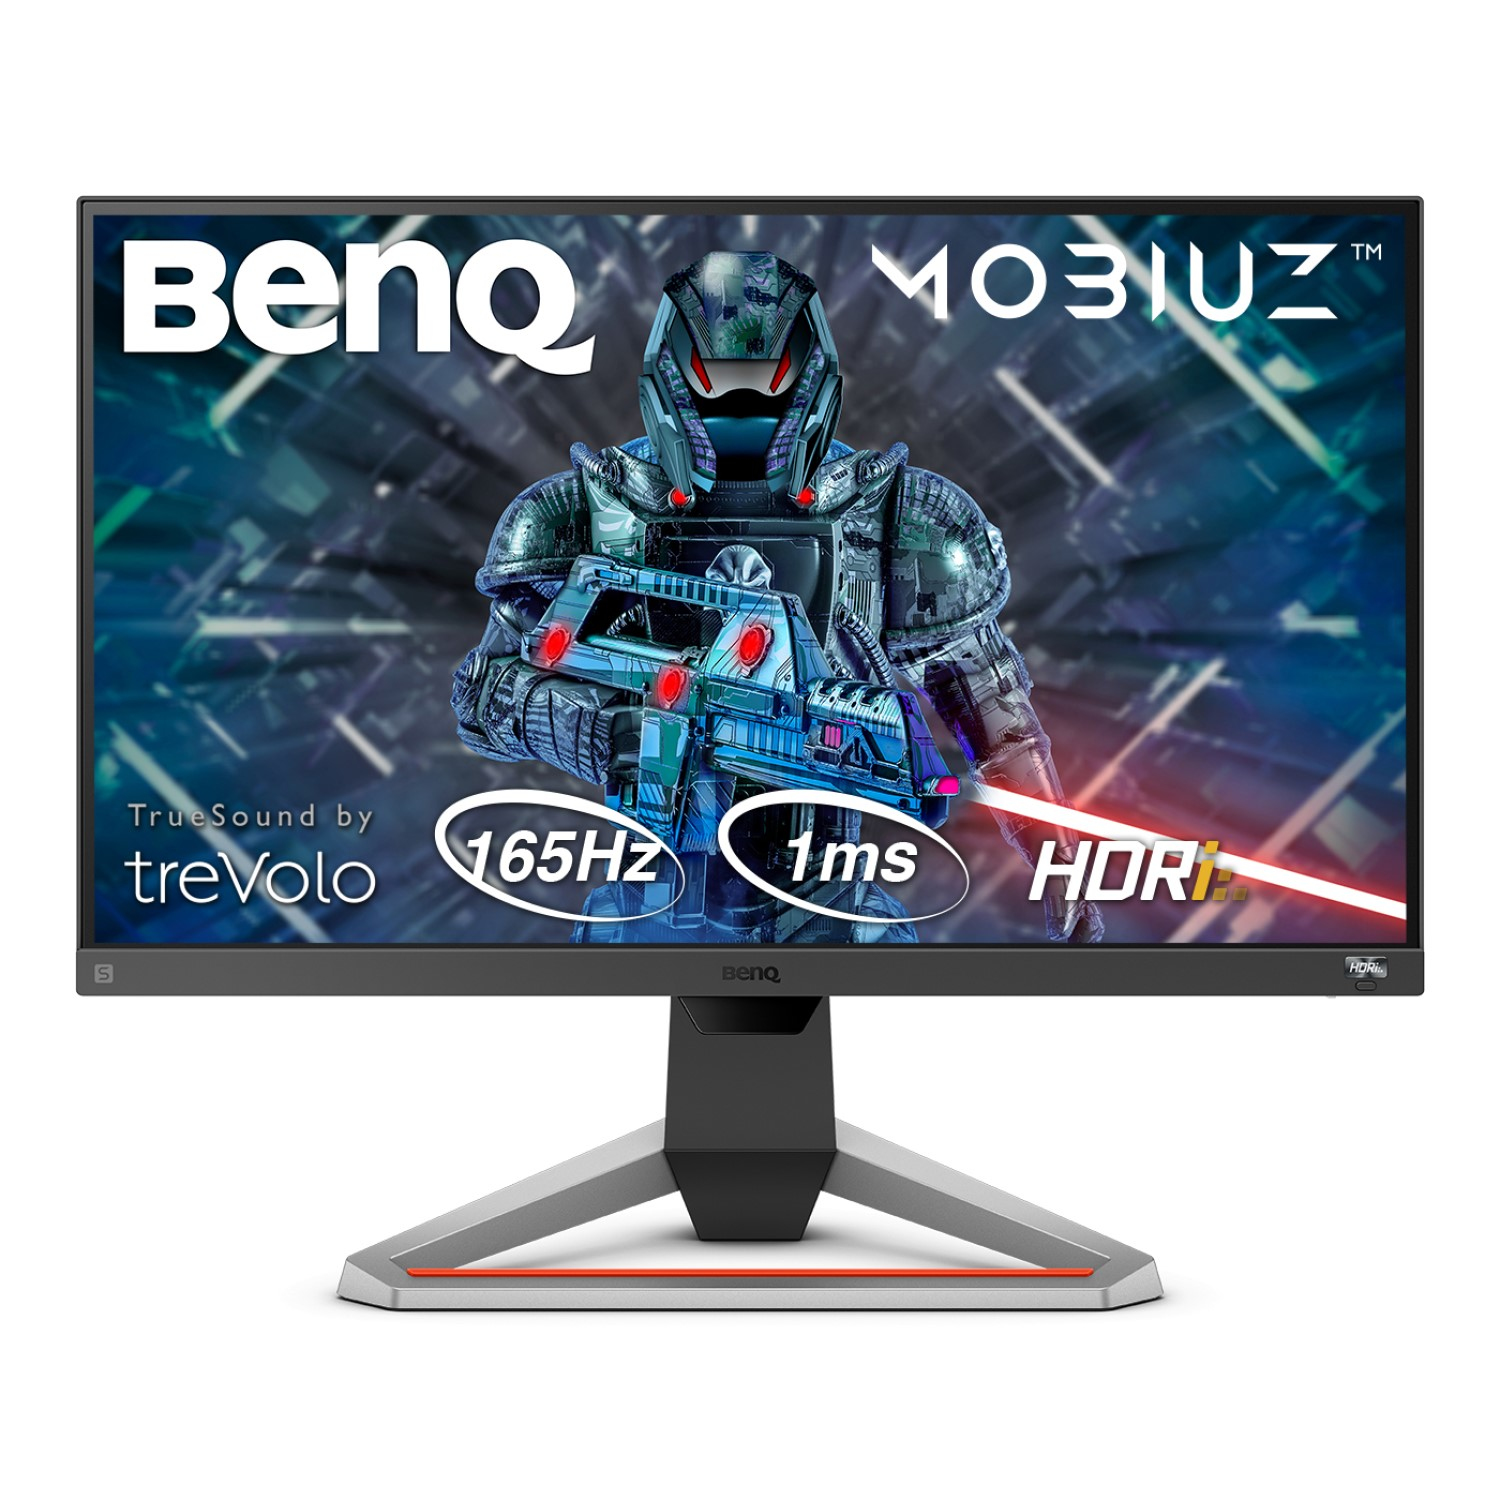 BenQ Mobiuz EX2510S - Flachbildschirm (TFT/LCD) - 63,5 cm